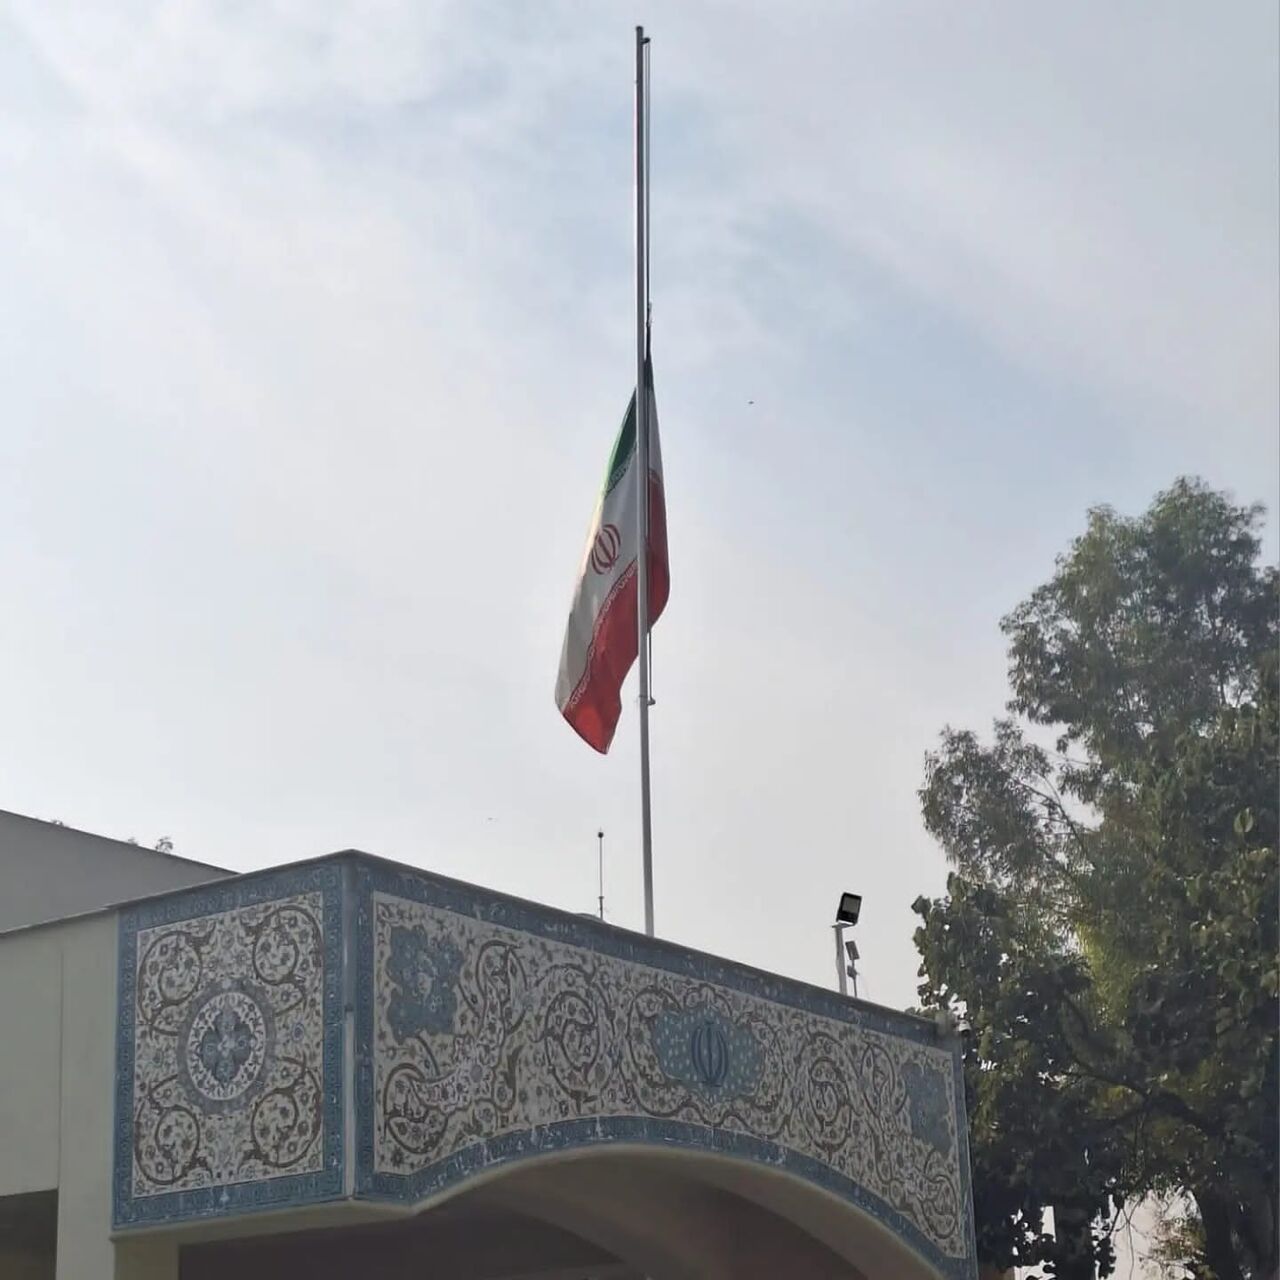 شہدائے کرمان کی یاد میں پاکستان میں ایرانی سفارت خانے پر نصب قومی پرچم سرنگوں کر دیا گیا